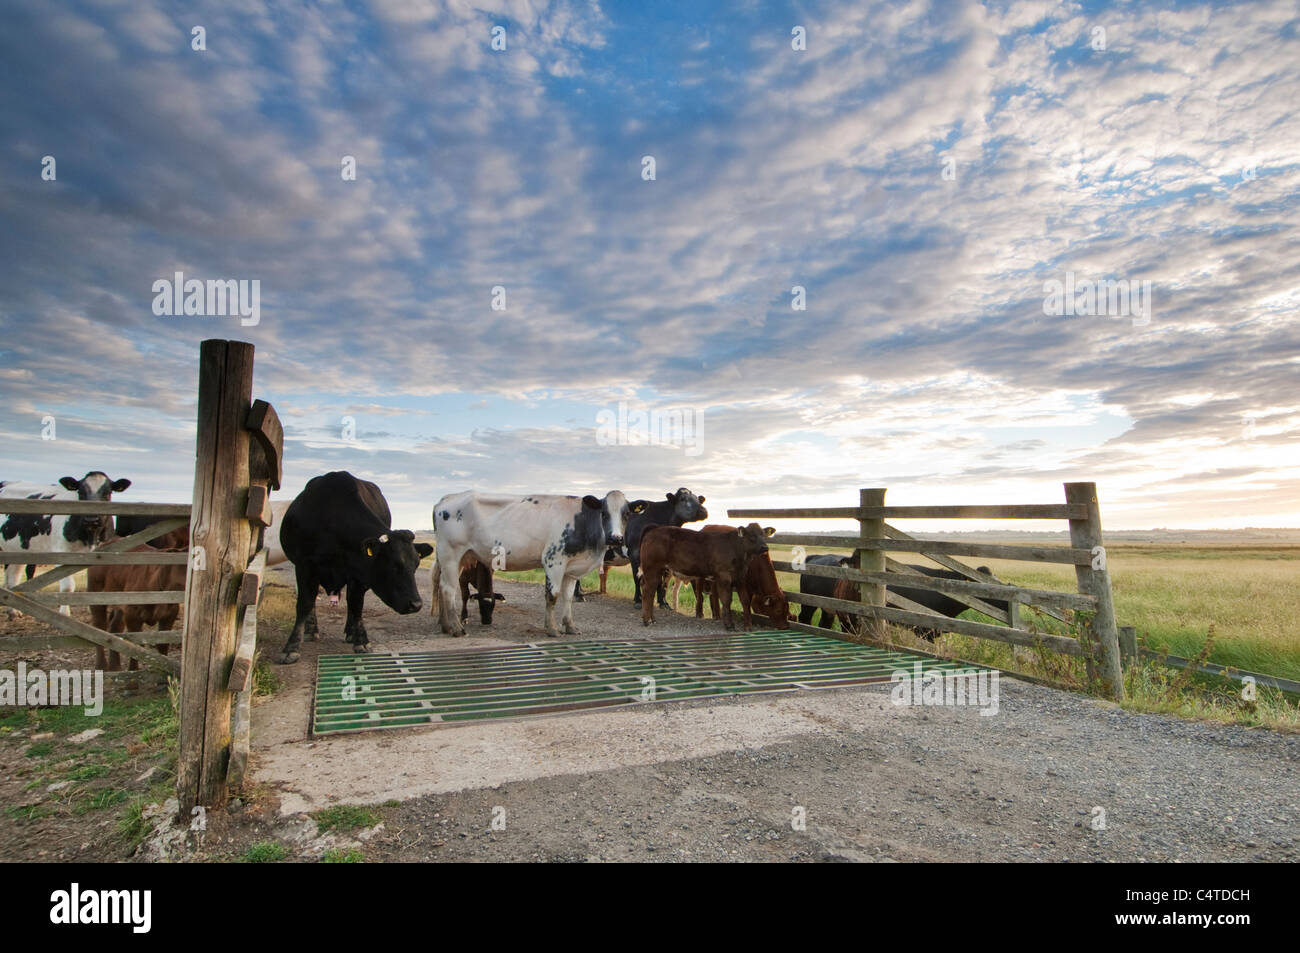 Debout à côté du bétail bétail profil au lever du soleil, les marais, Elmley Marais nord du Kent, à l'île de Sheppey, Kent, Angleterre, juillet Banque D'Images